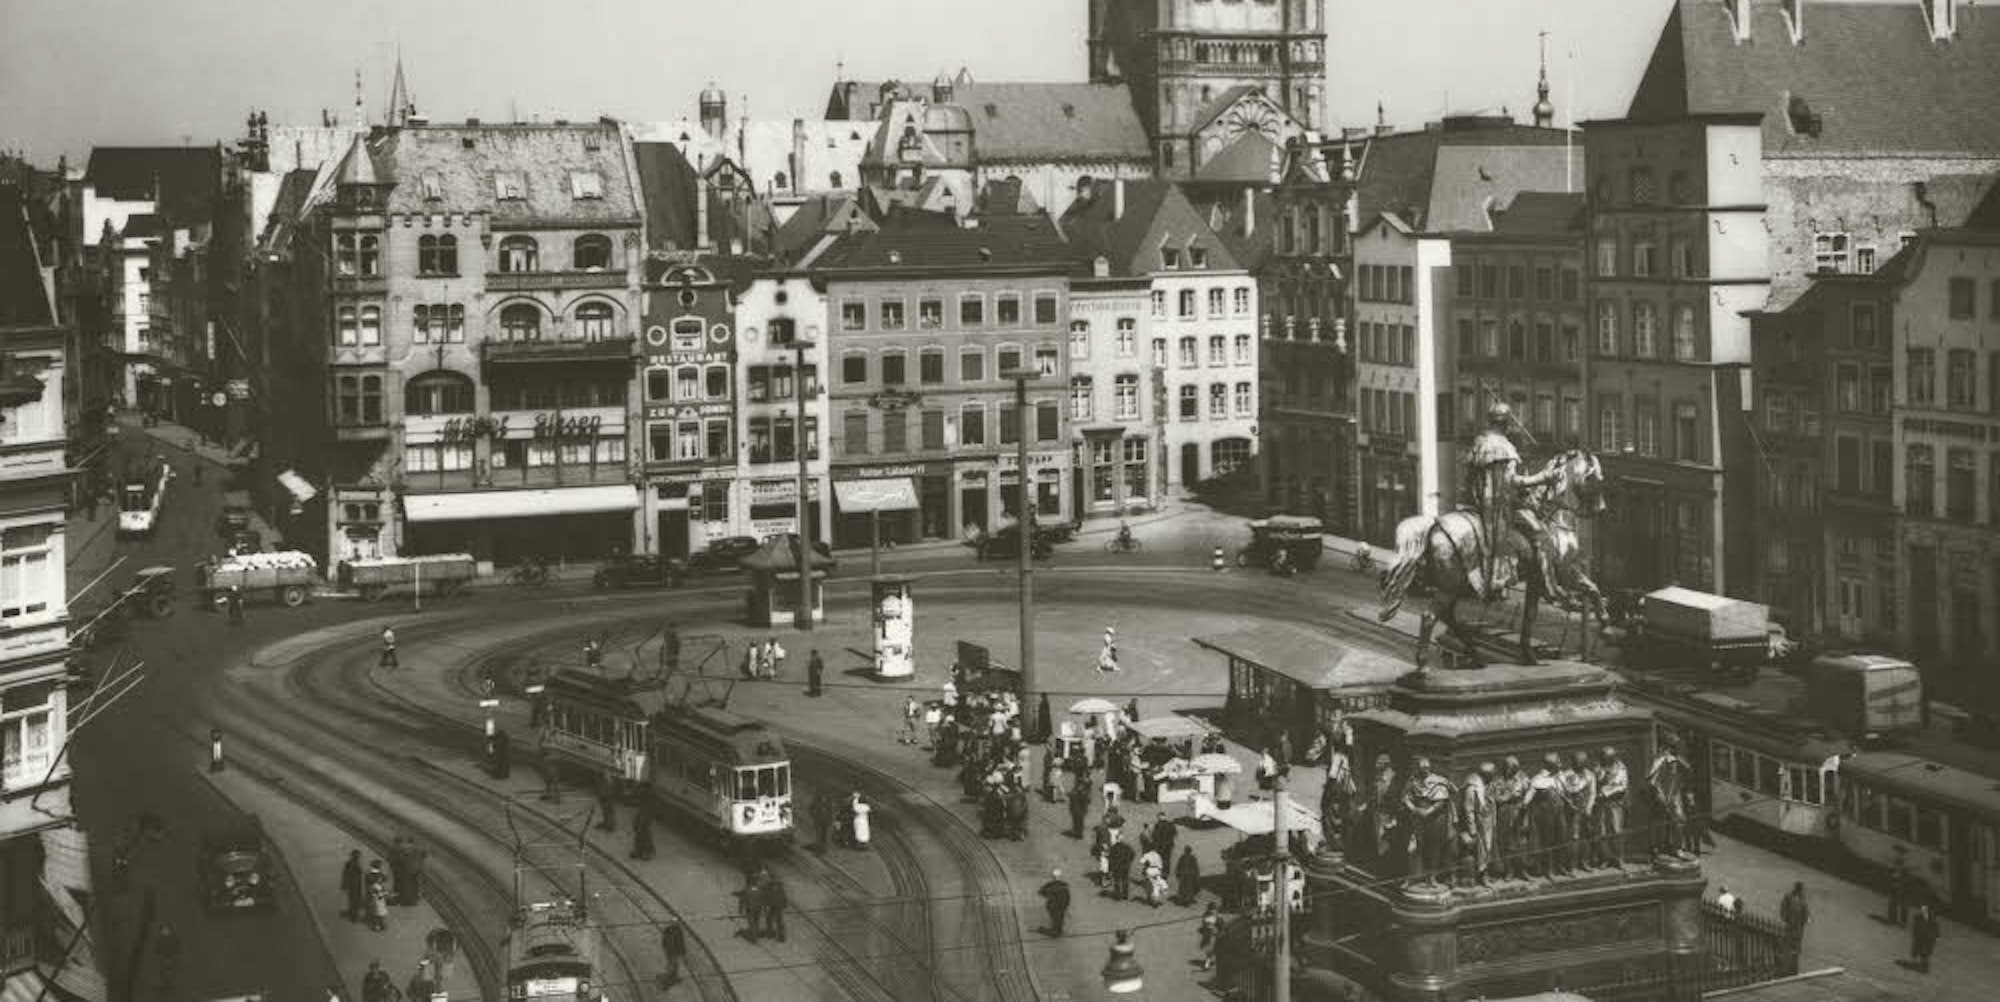 Köln, wie es war: August Sander dokumentierte nach dem Krieg Straßen und Plätze, darunter auch den Heumarkt mit Straßenbahnverkehr.